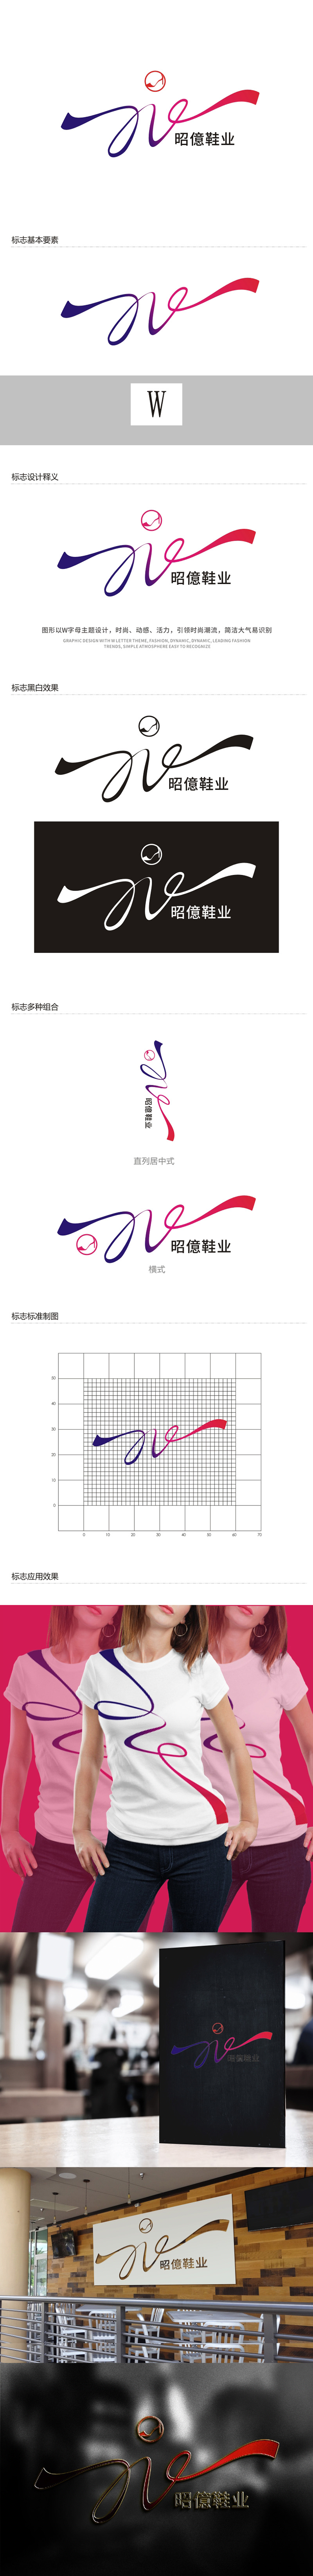 杨占斌的昭億鞋业logo设计